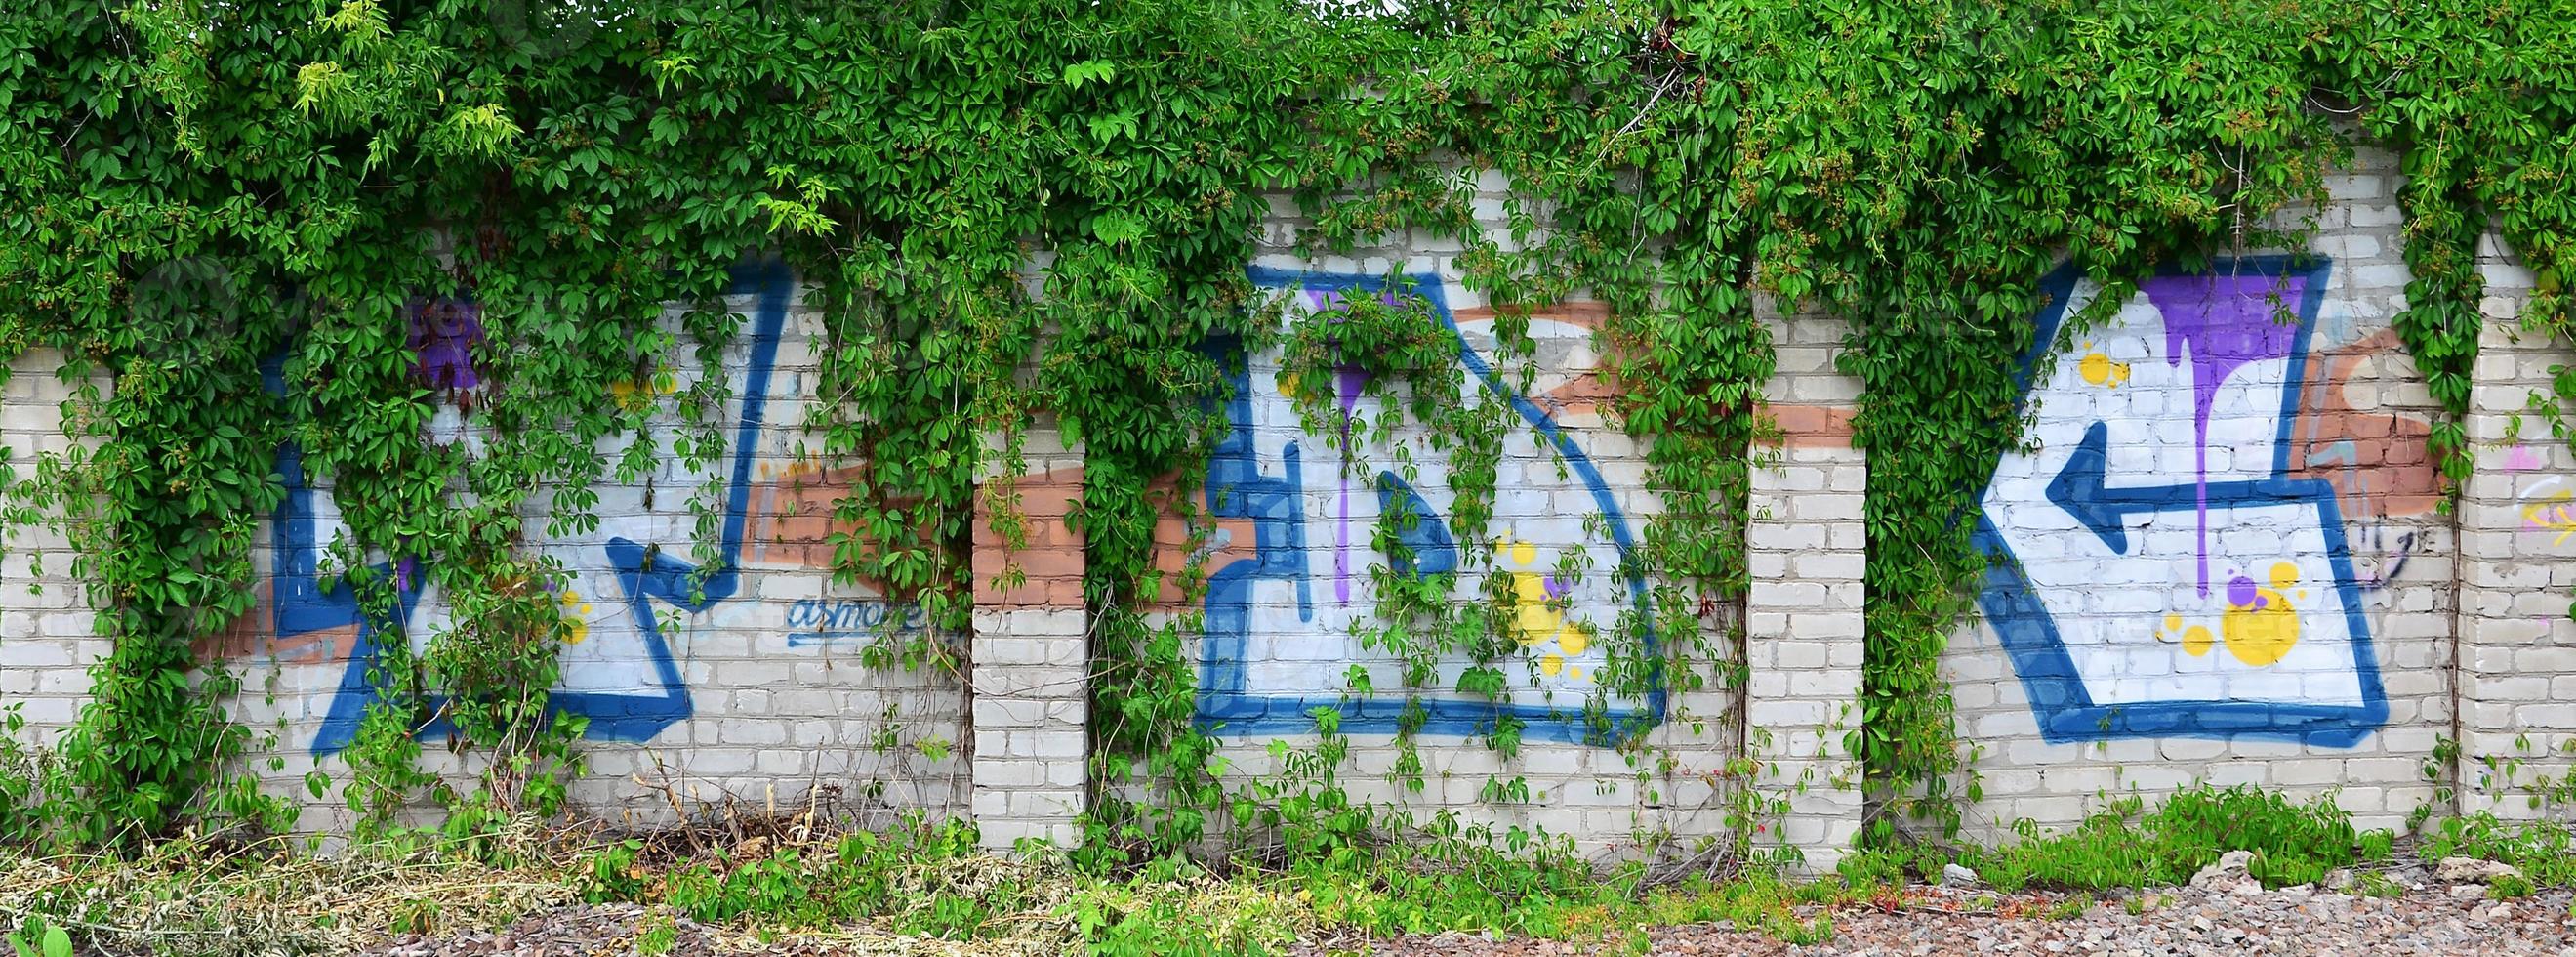 uma imagem detalhada de um desenho de grafite colorido, que está coberto de vegetação nas moitas de hera. imagem de arte de rua de fundo foto